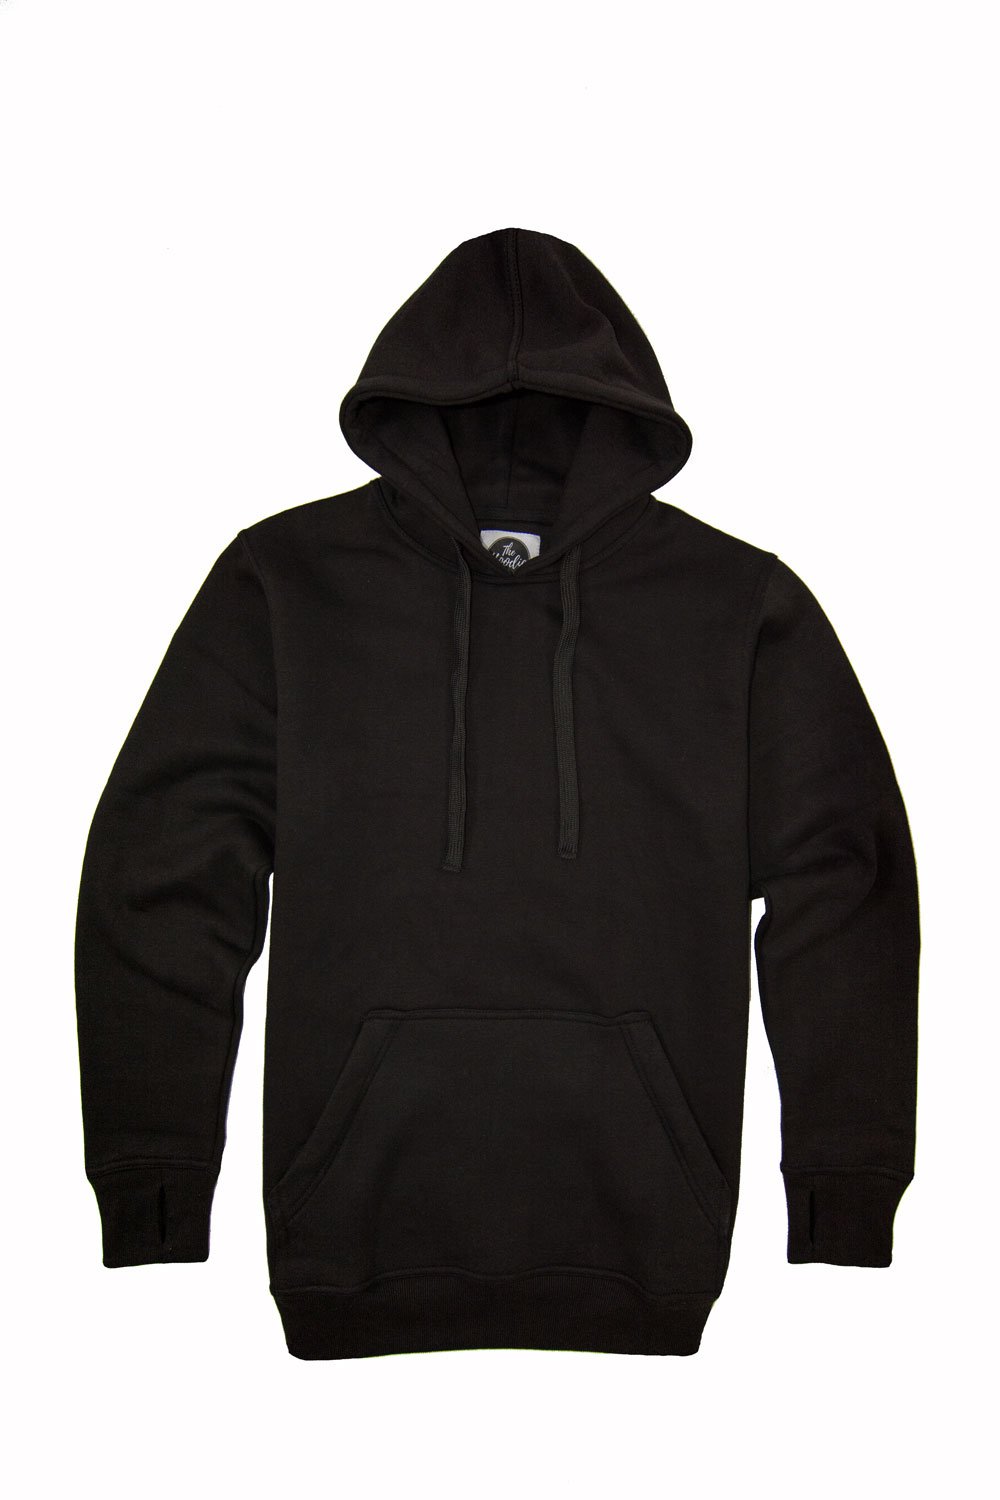 Black tall hoodie